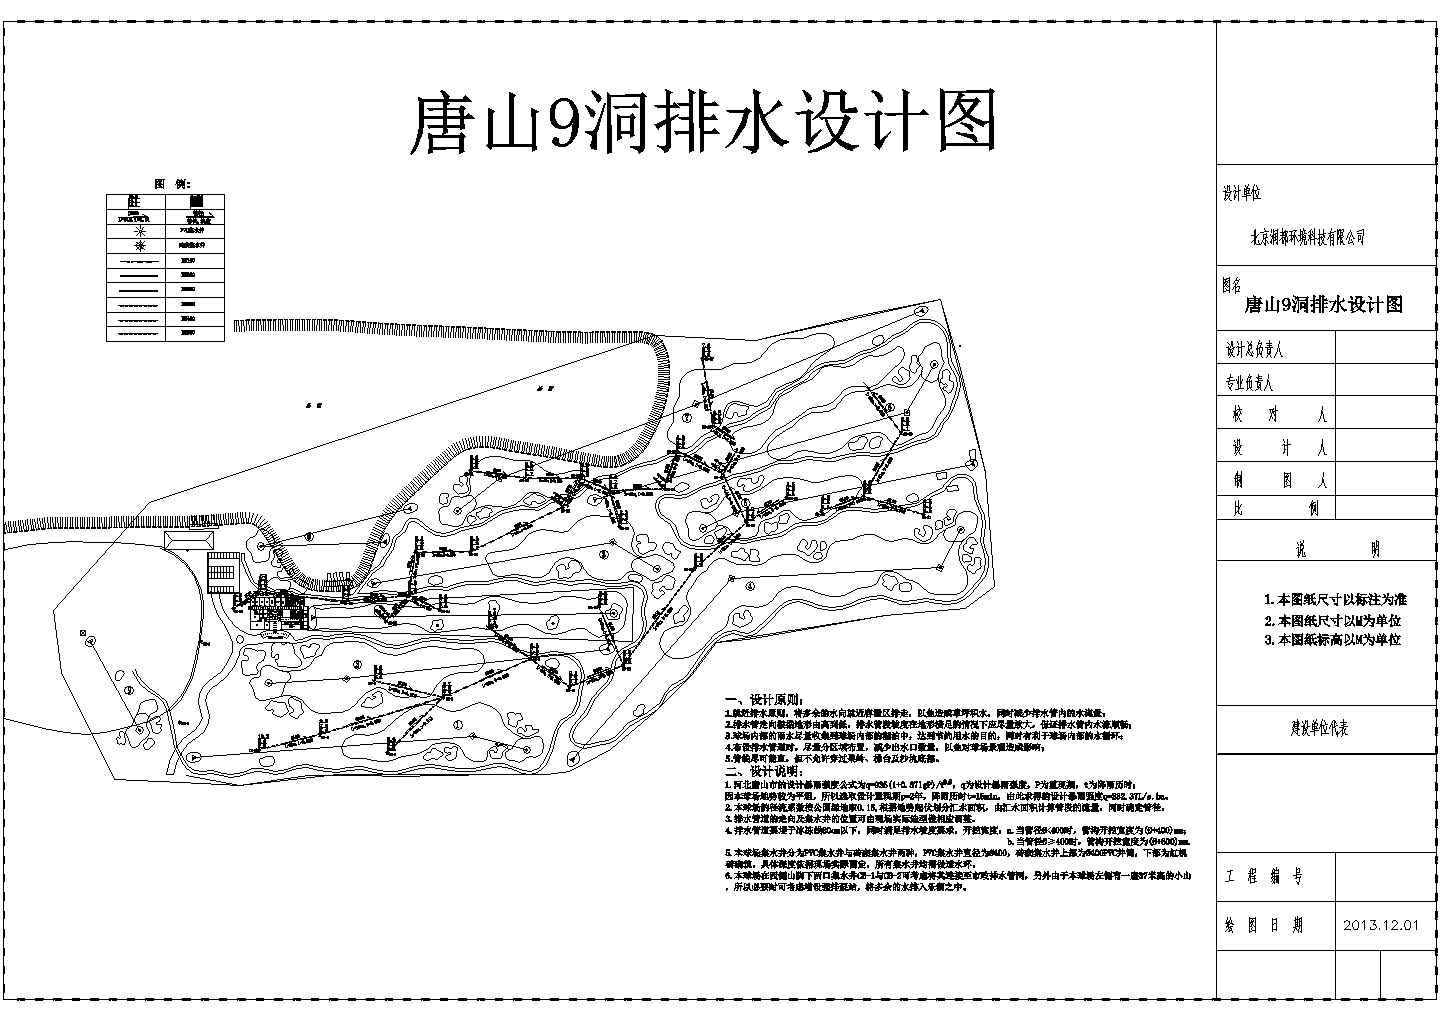 河北唐山9洞高尔夫喷灌、排水设计图纸